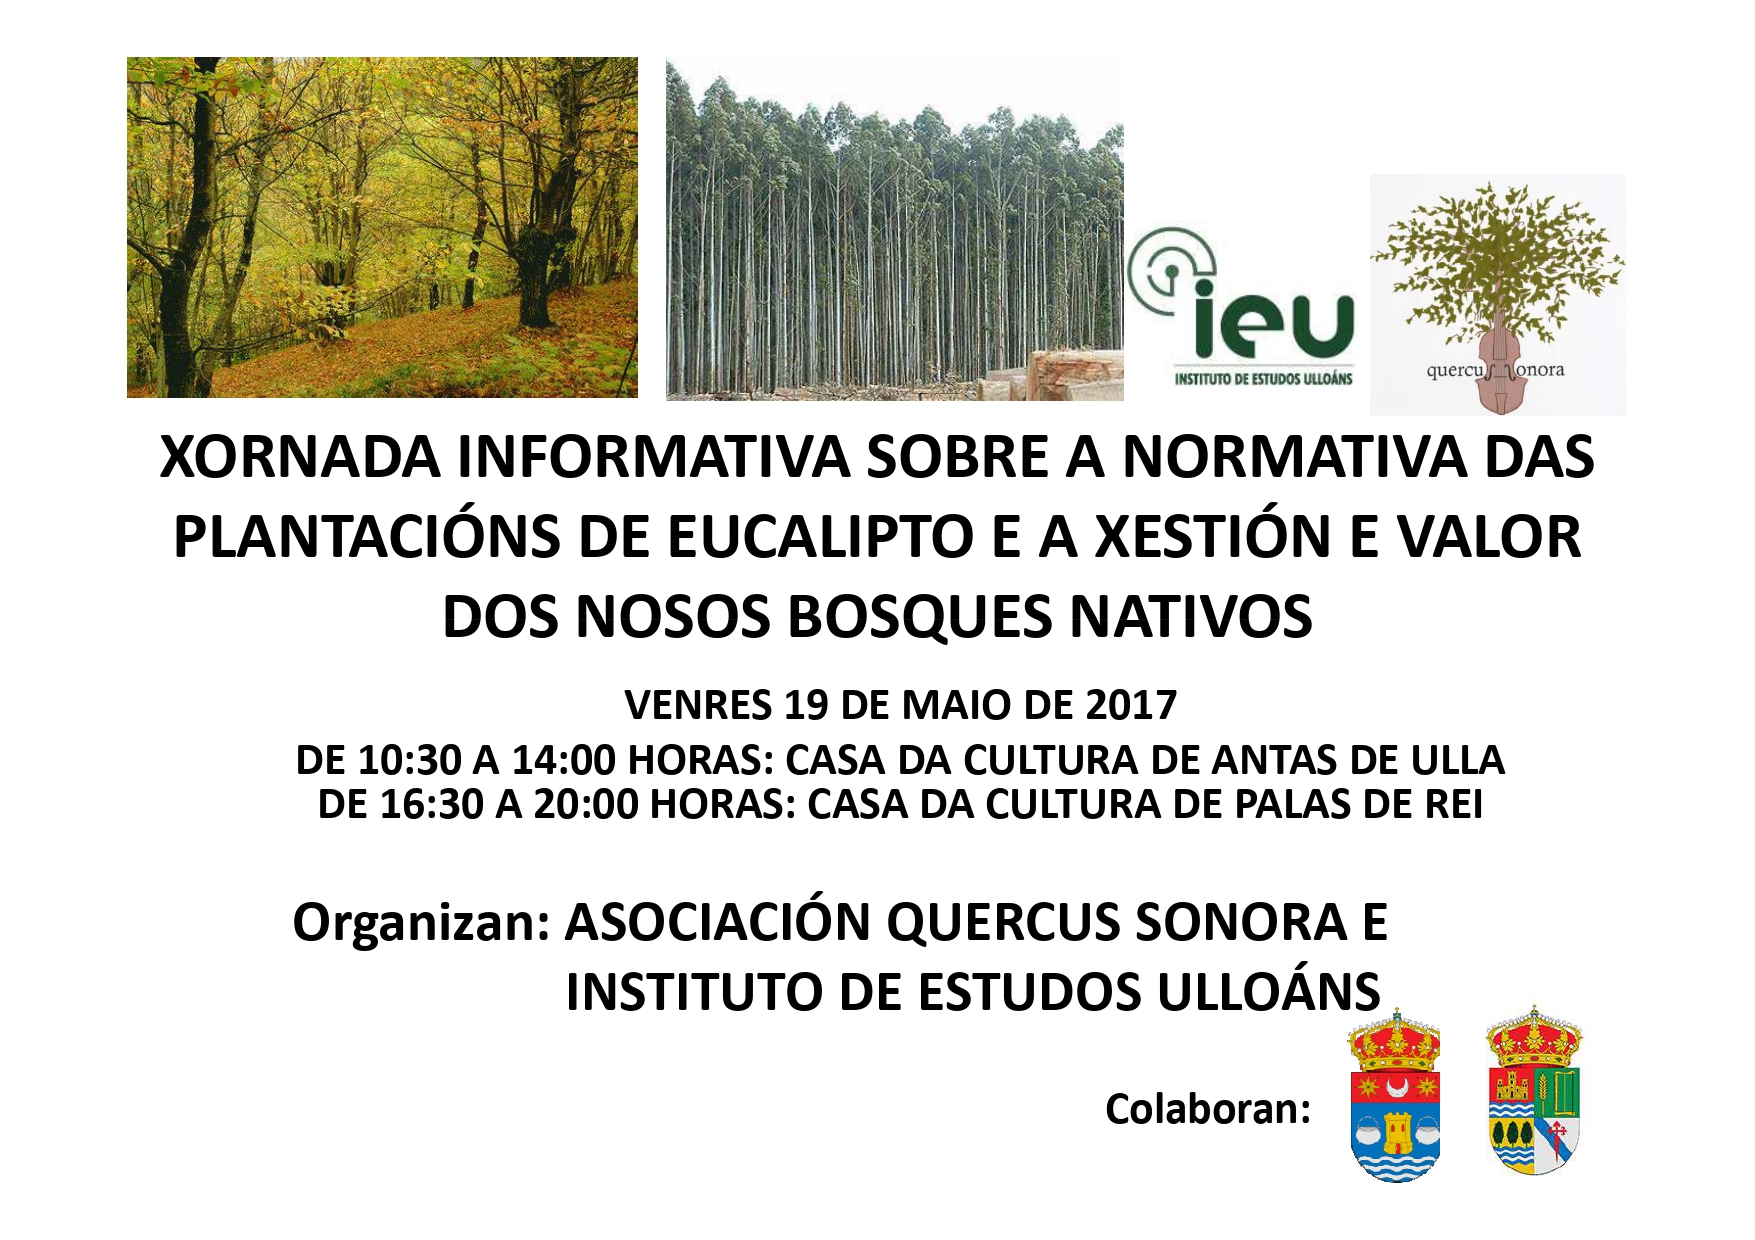 Xornada informativa normativa plantación eucalipto 19-5-2017, Instituto de Estudos Ulloáns, Quercus Sonora, IEU